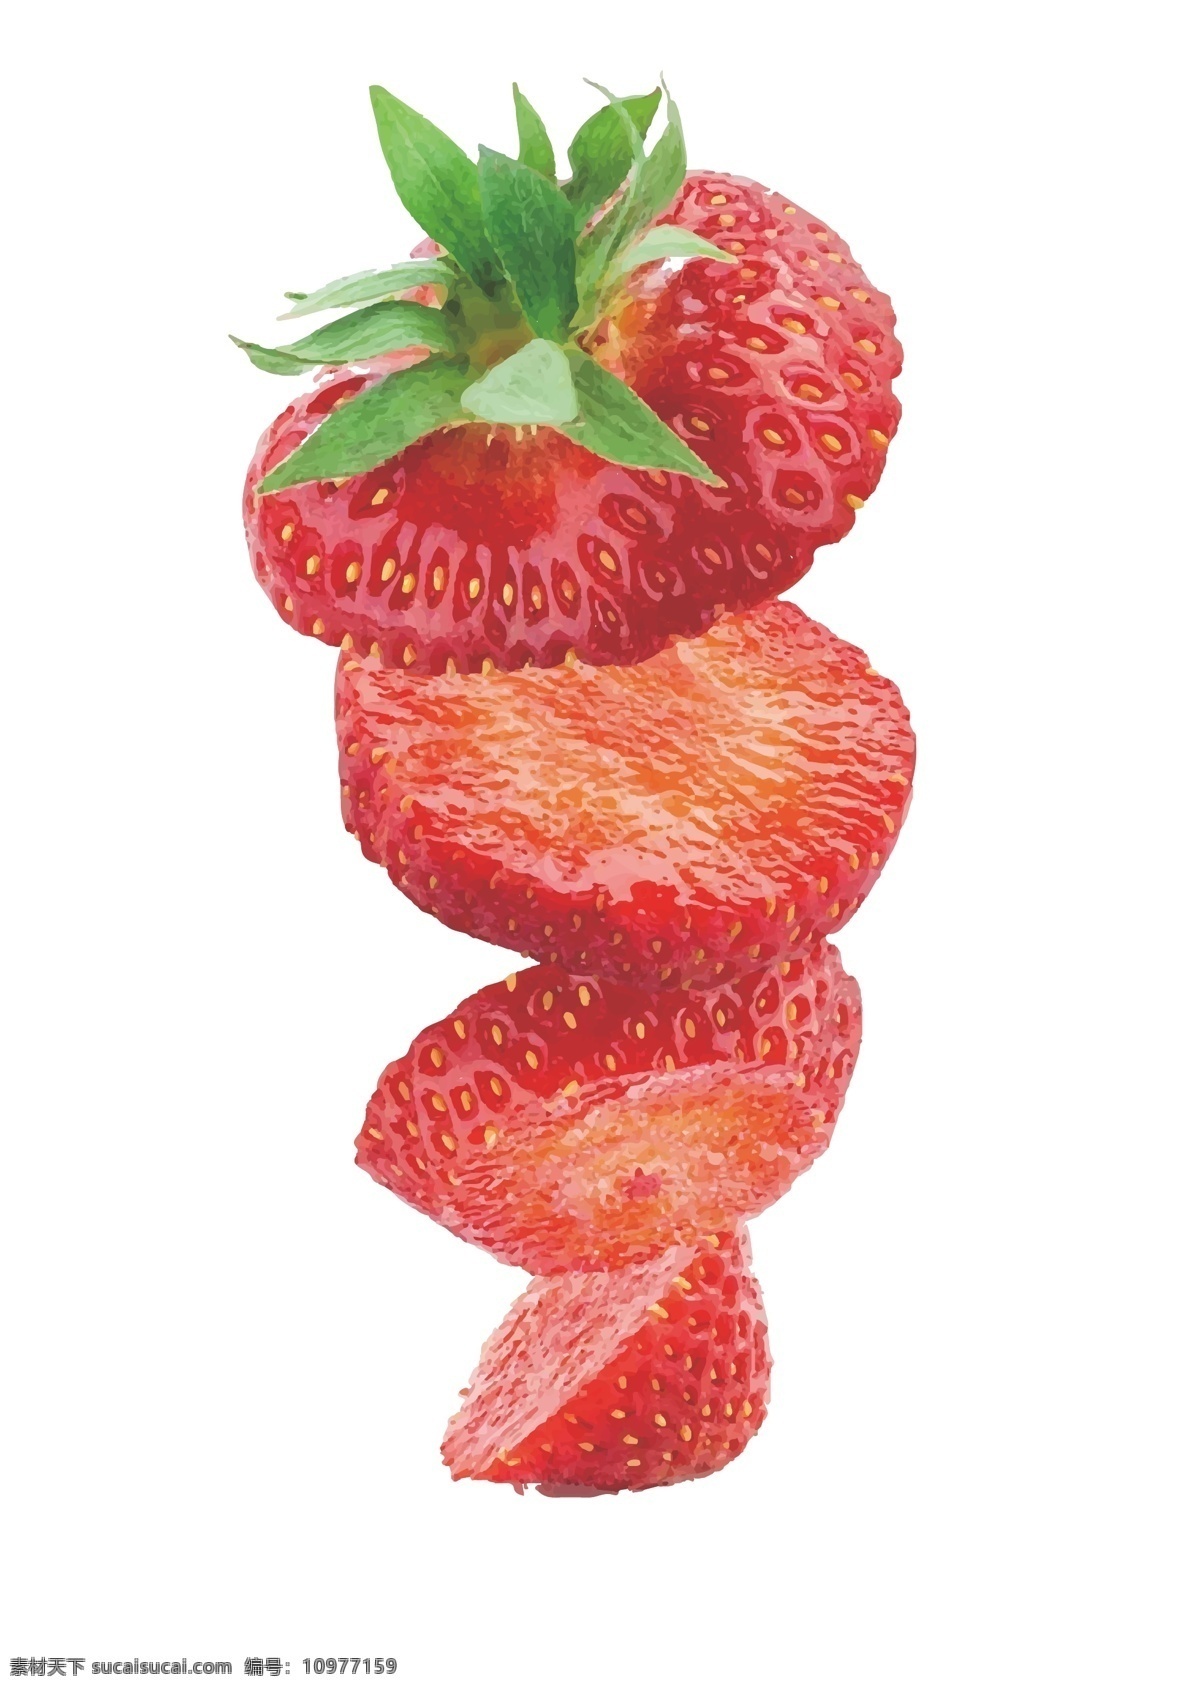 矢量草莓 矢量 草莓 草莓片 切片草莓 草莓形状 分层